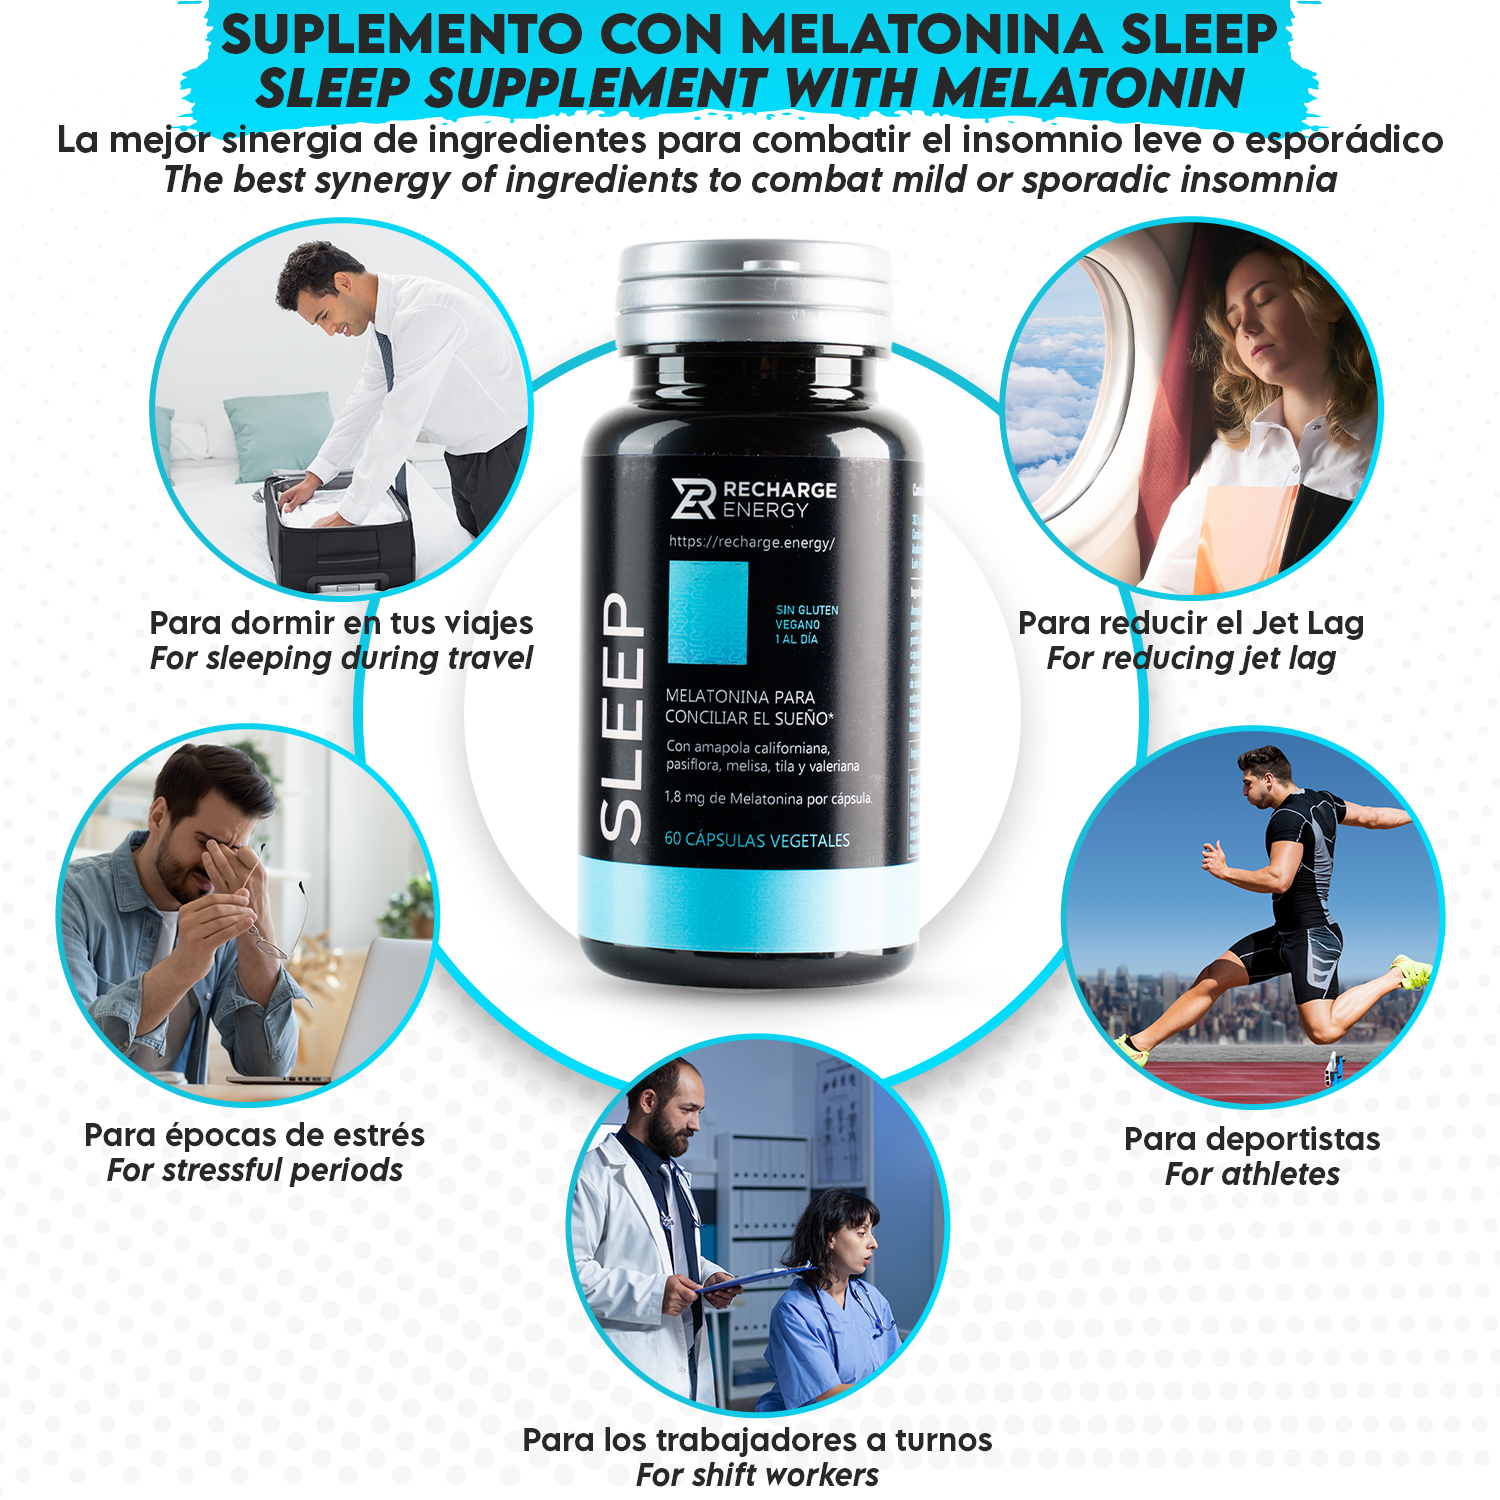 El suplemento con melatonina Sleep te ayuda a dormir mejor